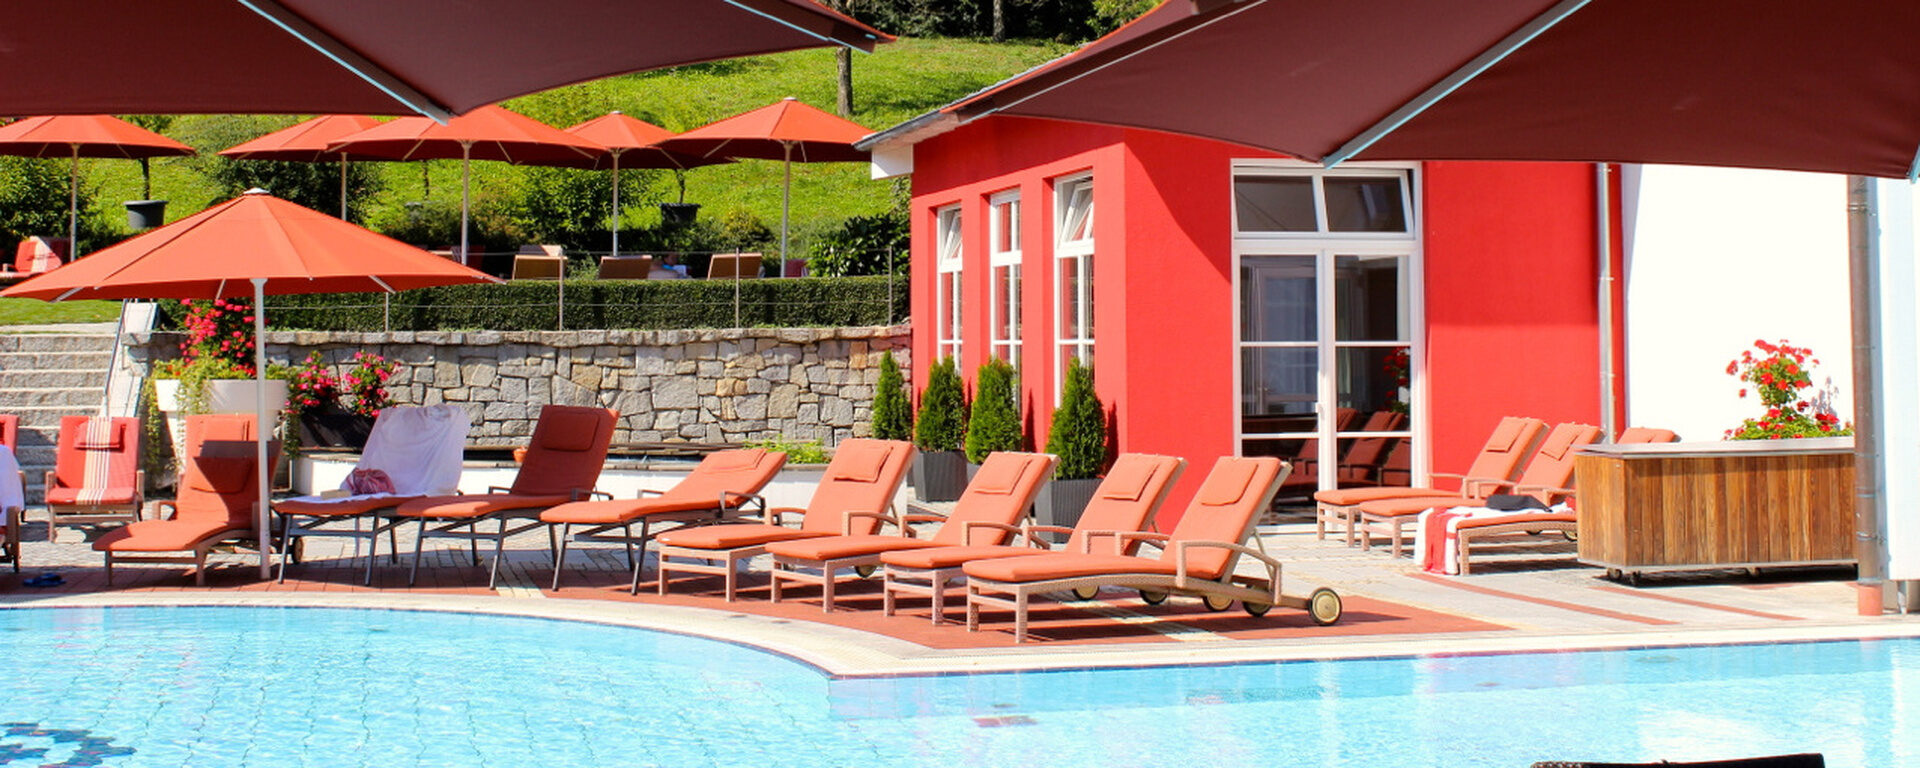 Unser Pool im Garten lädt zum Verweilen und Entspannen ein - Klinik und Hotel St. Wolfgang